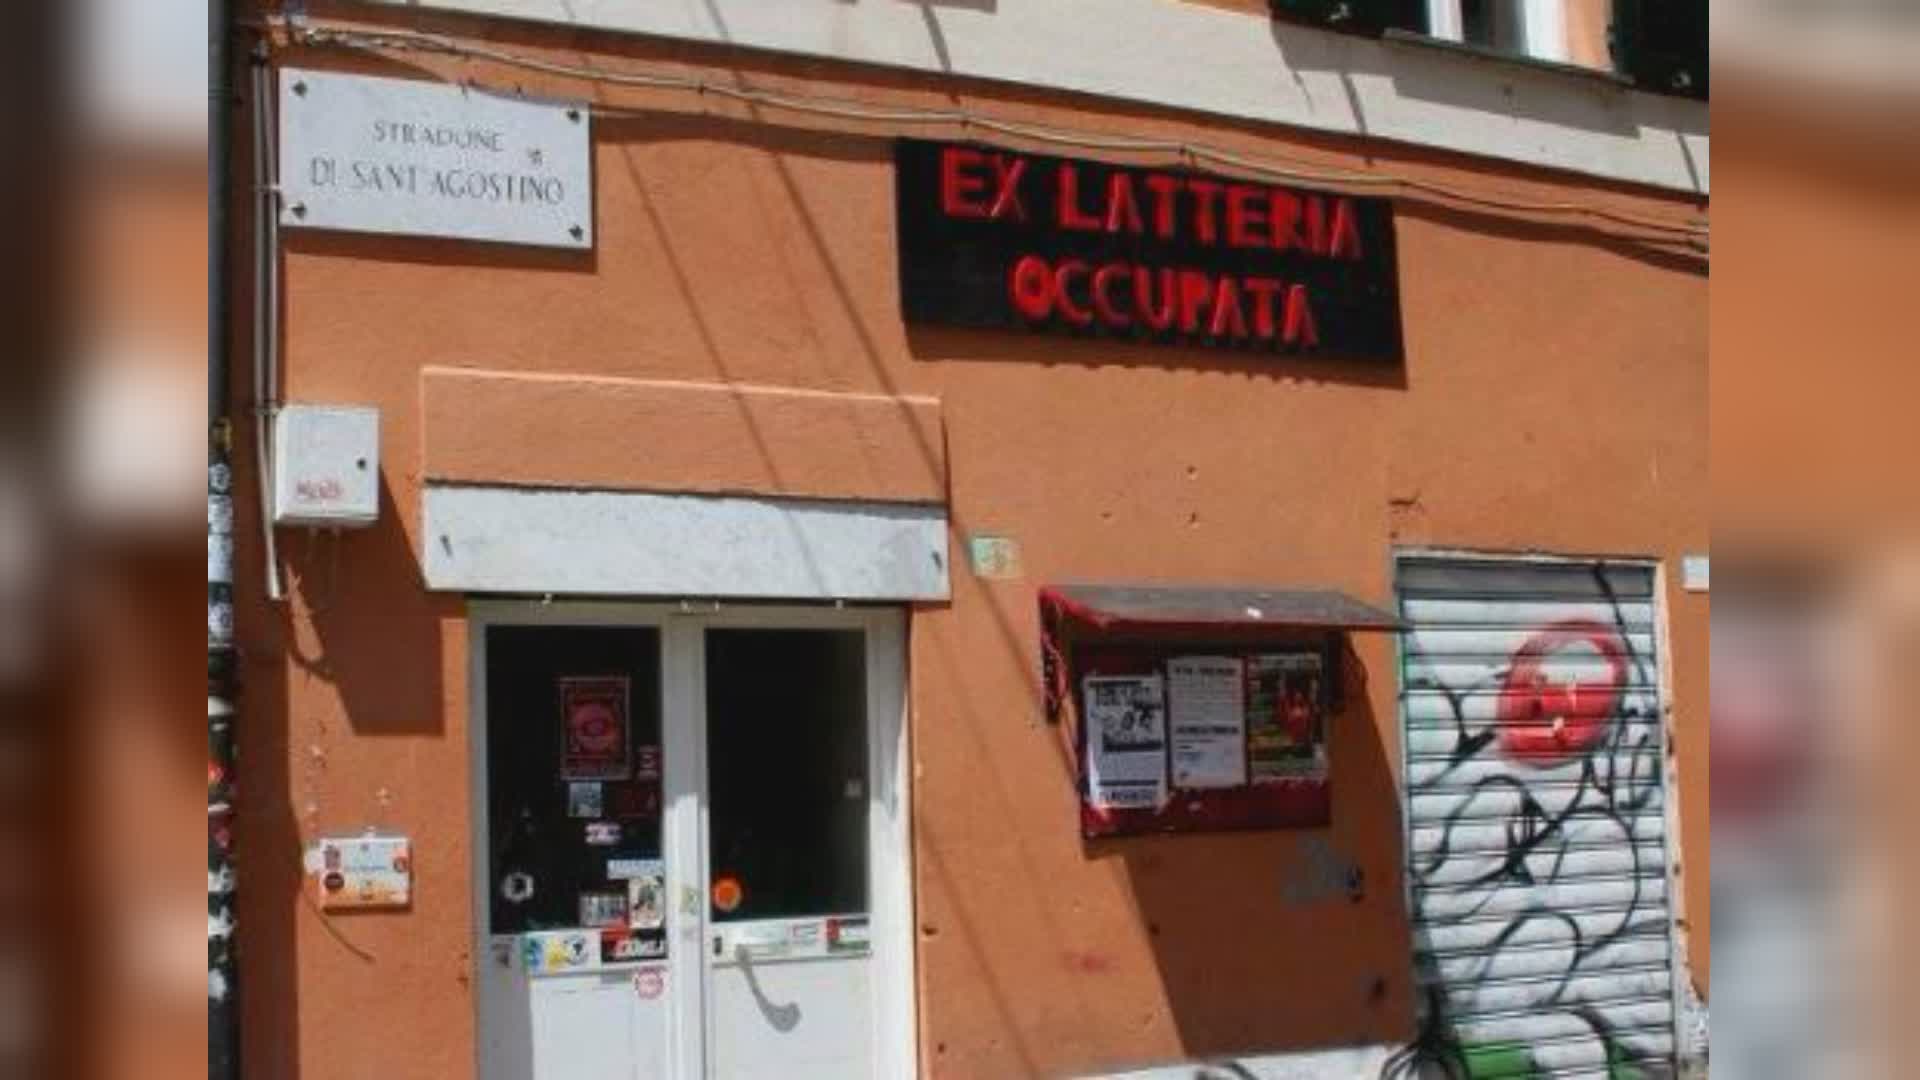 Genova, sul caso dell'ex Latteria, la Rifondazione Comunista: "C'è una crescente intolleranza verso qualsiasi forma di dissenso"